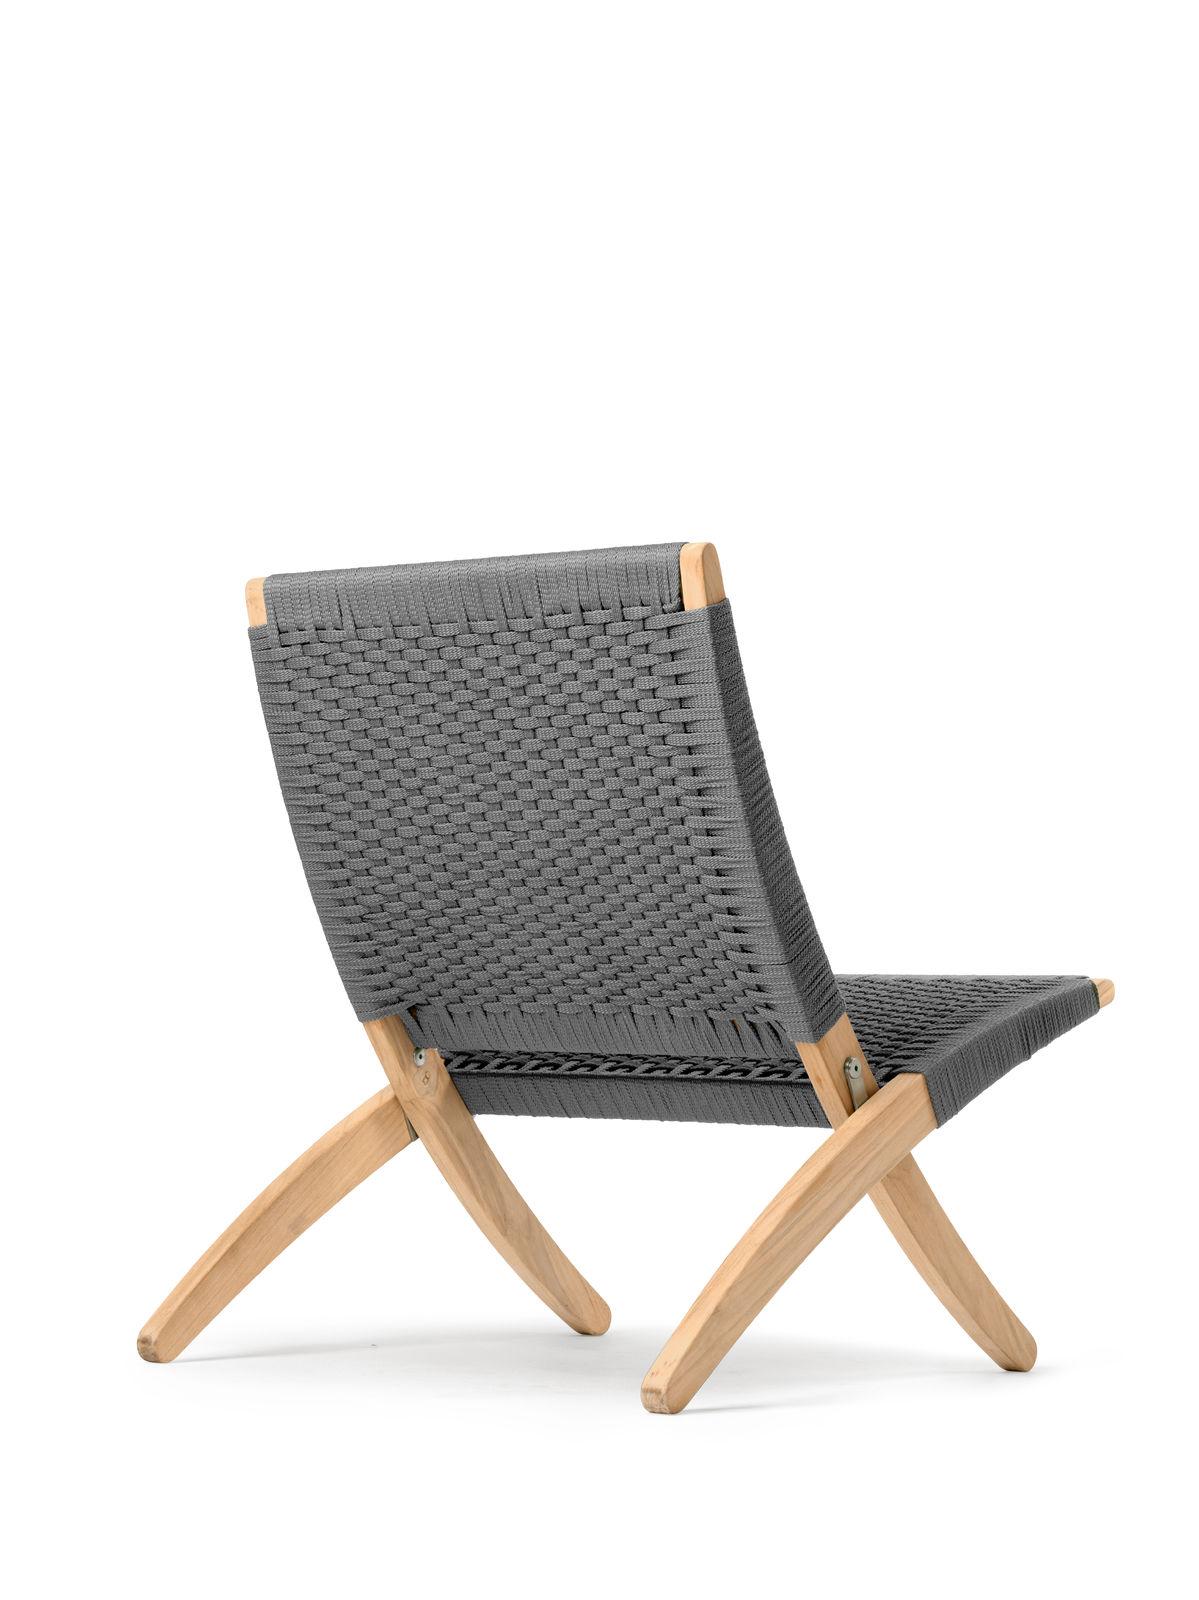 Der 1997 von Morten Gøttler entworfene MG501 Cuba Chair besticht durch sein ideales Gleichgewicht zwischen Form und Funktion und verweist auf frühere Meister, die mit der Weiterentwicklung des Klappstuhlkonzepts experimentierten.